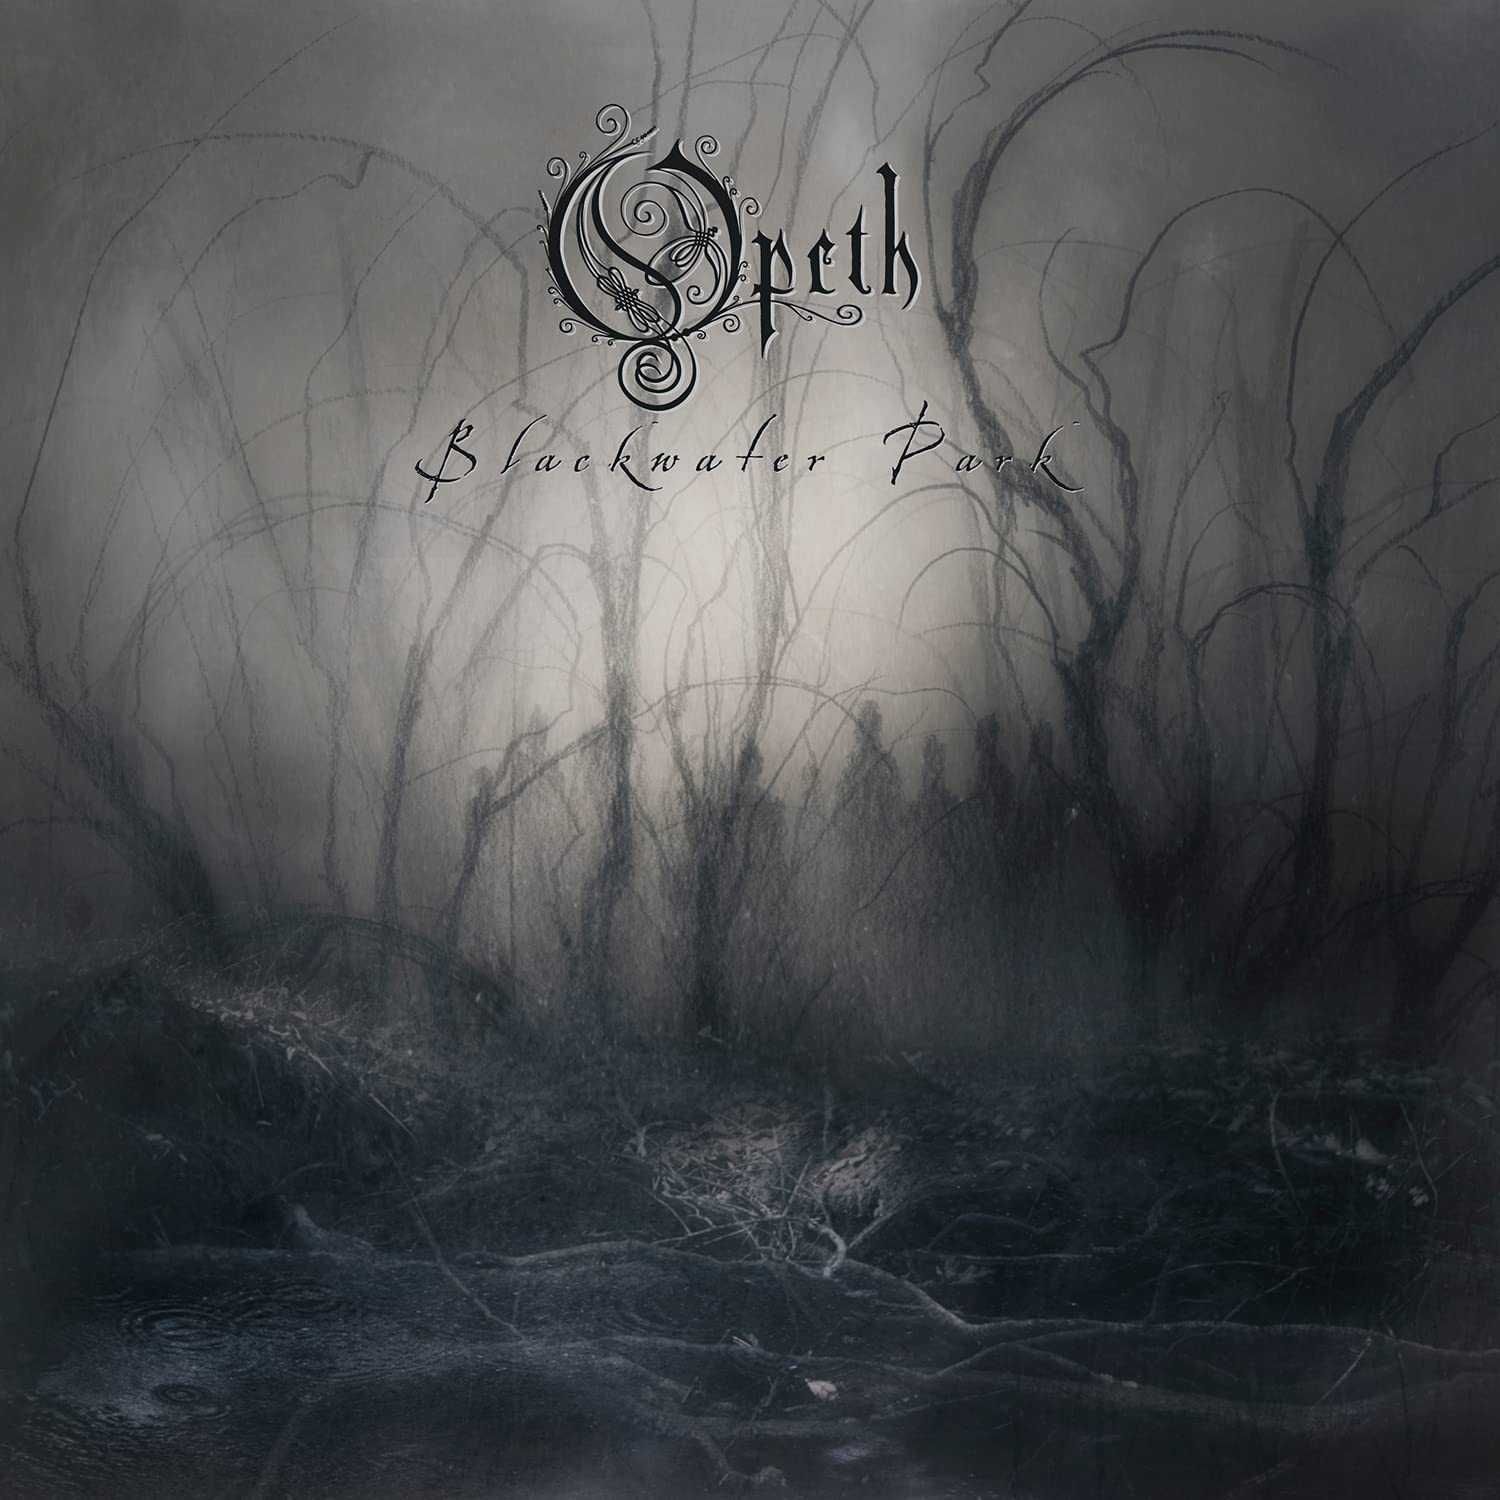 Вініл платівки Tiamat Opeth